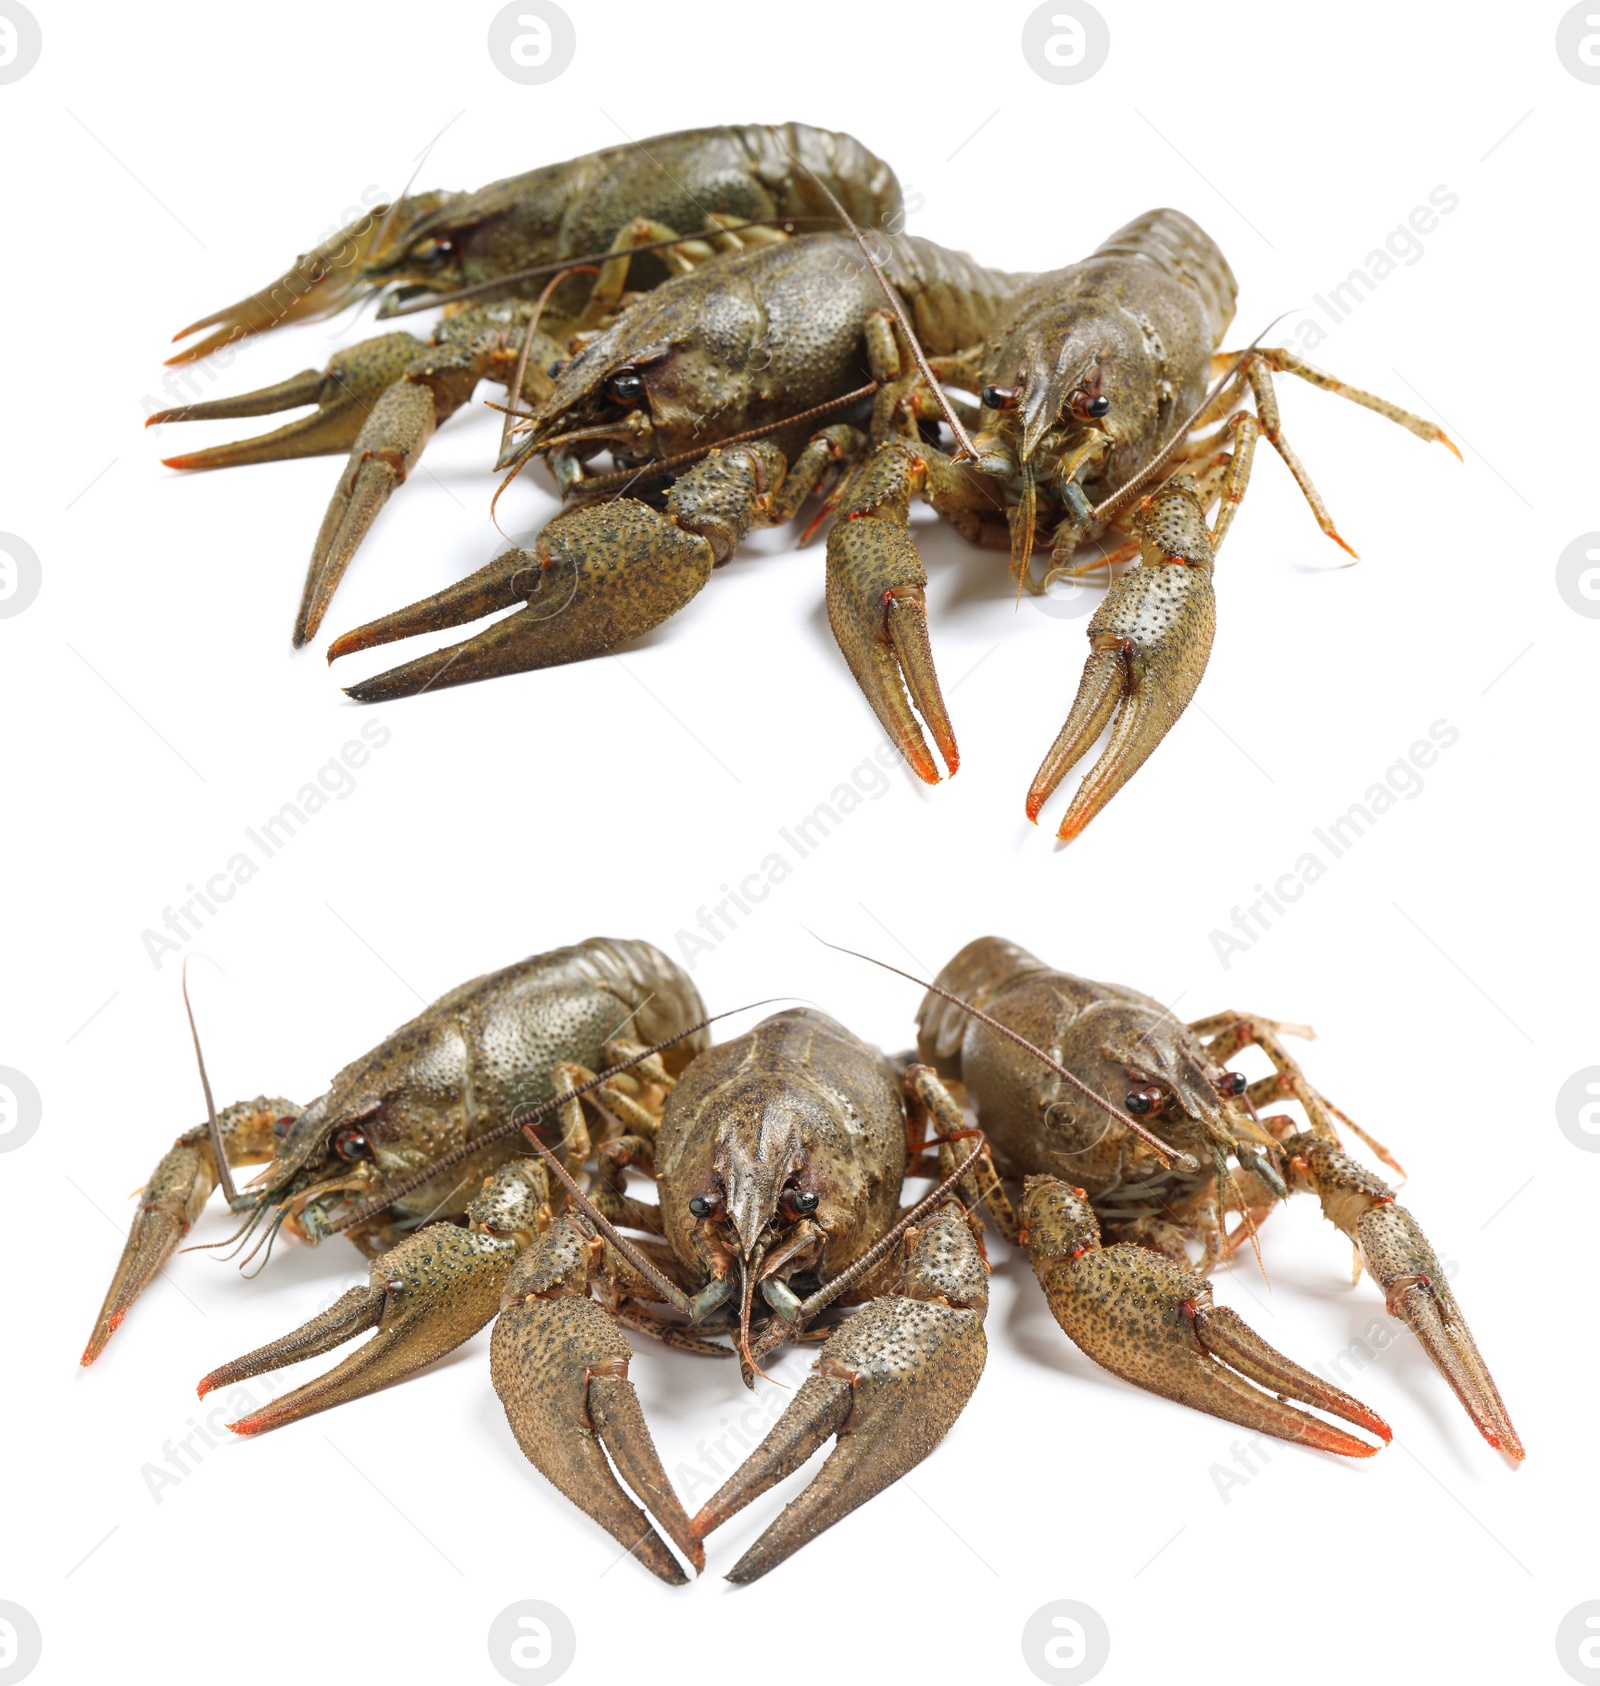 Image of Set of fresh crayfishes on white background